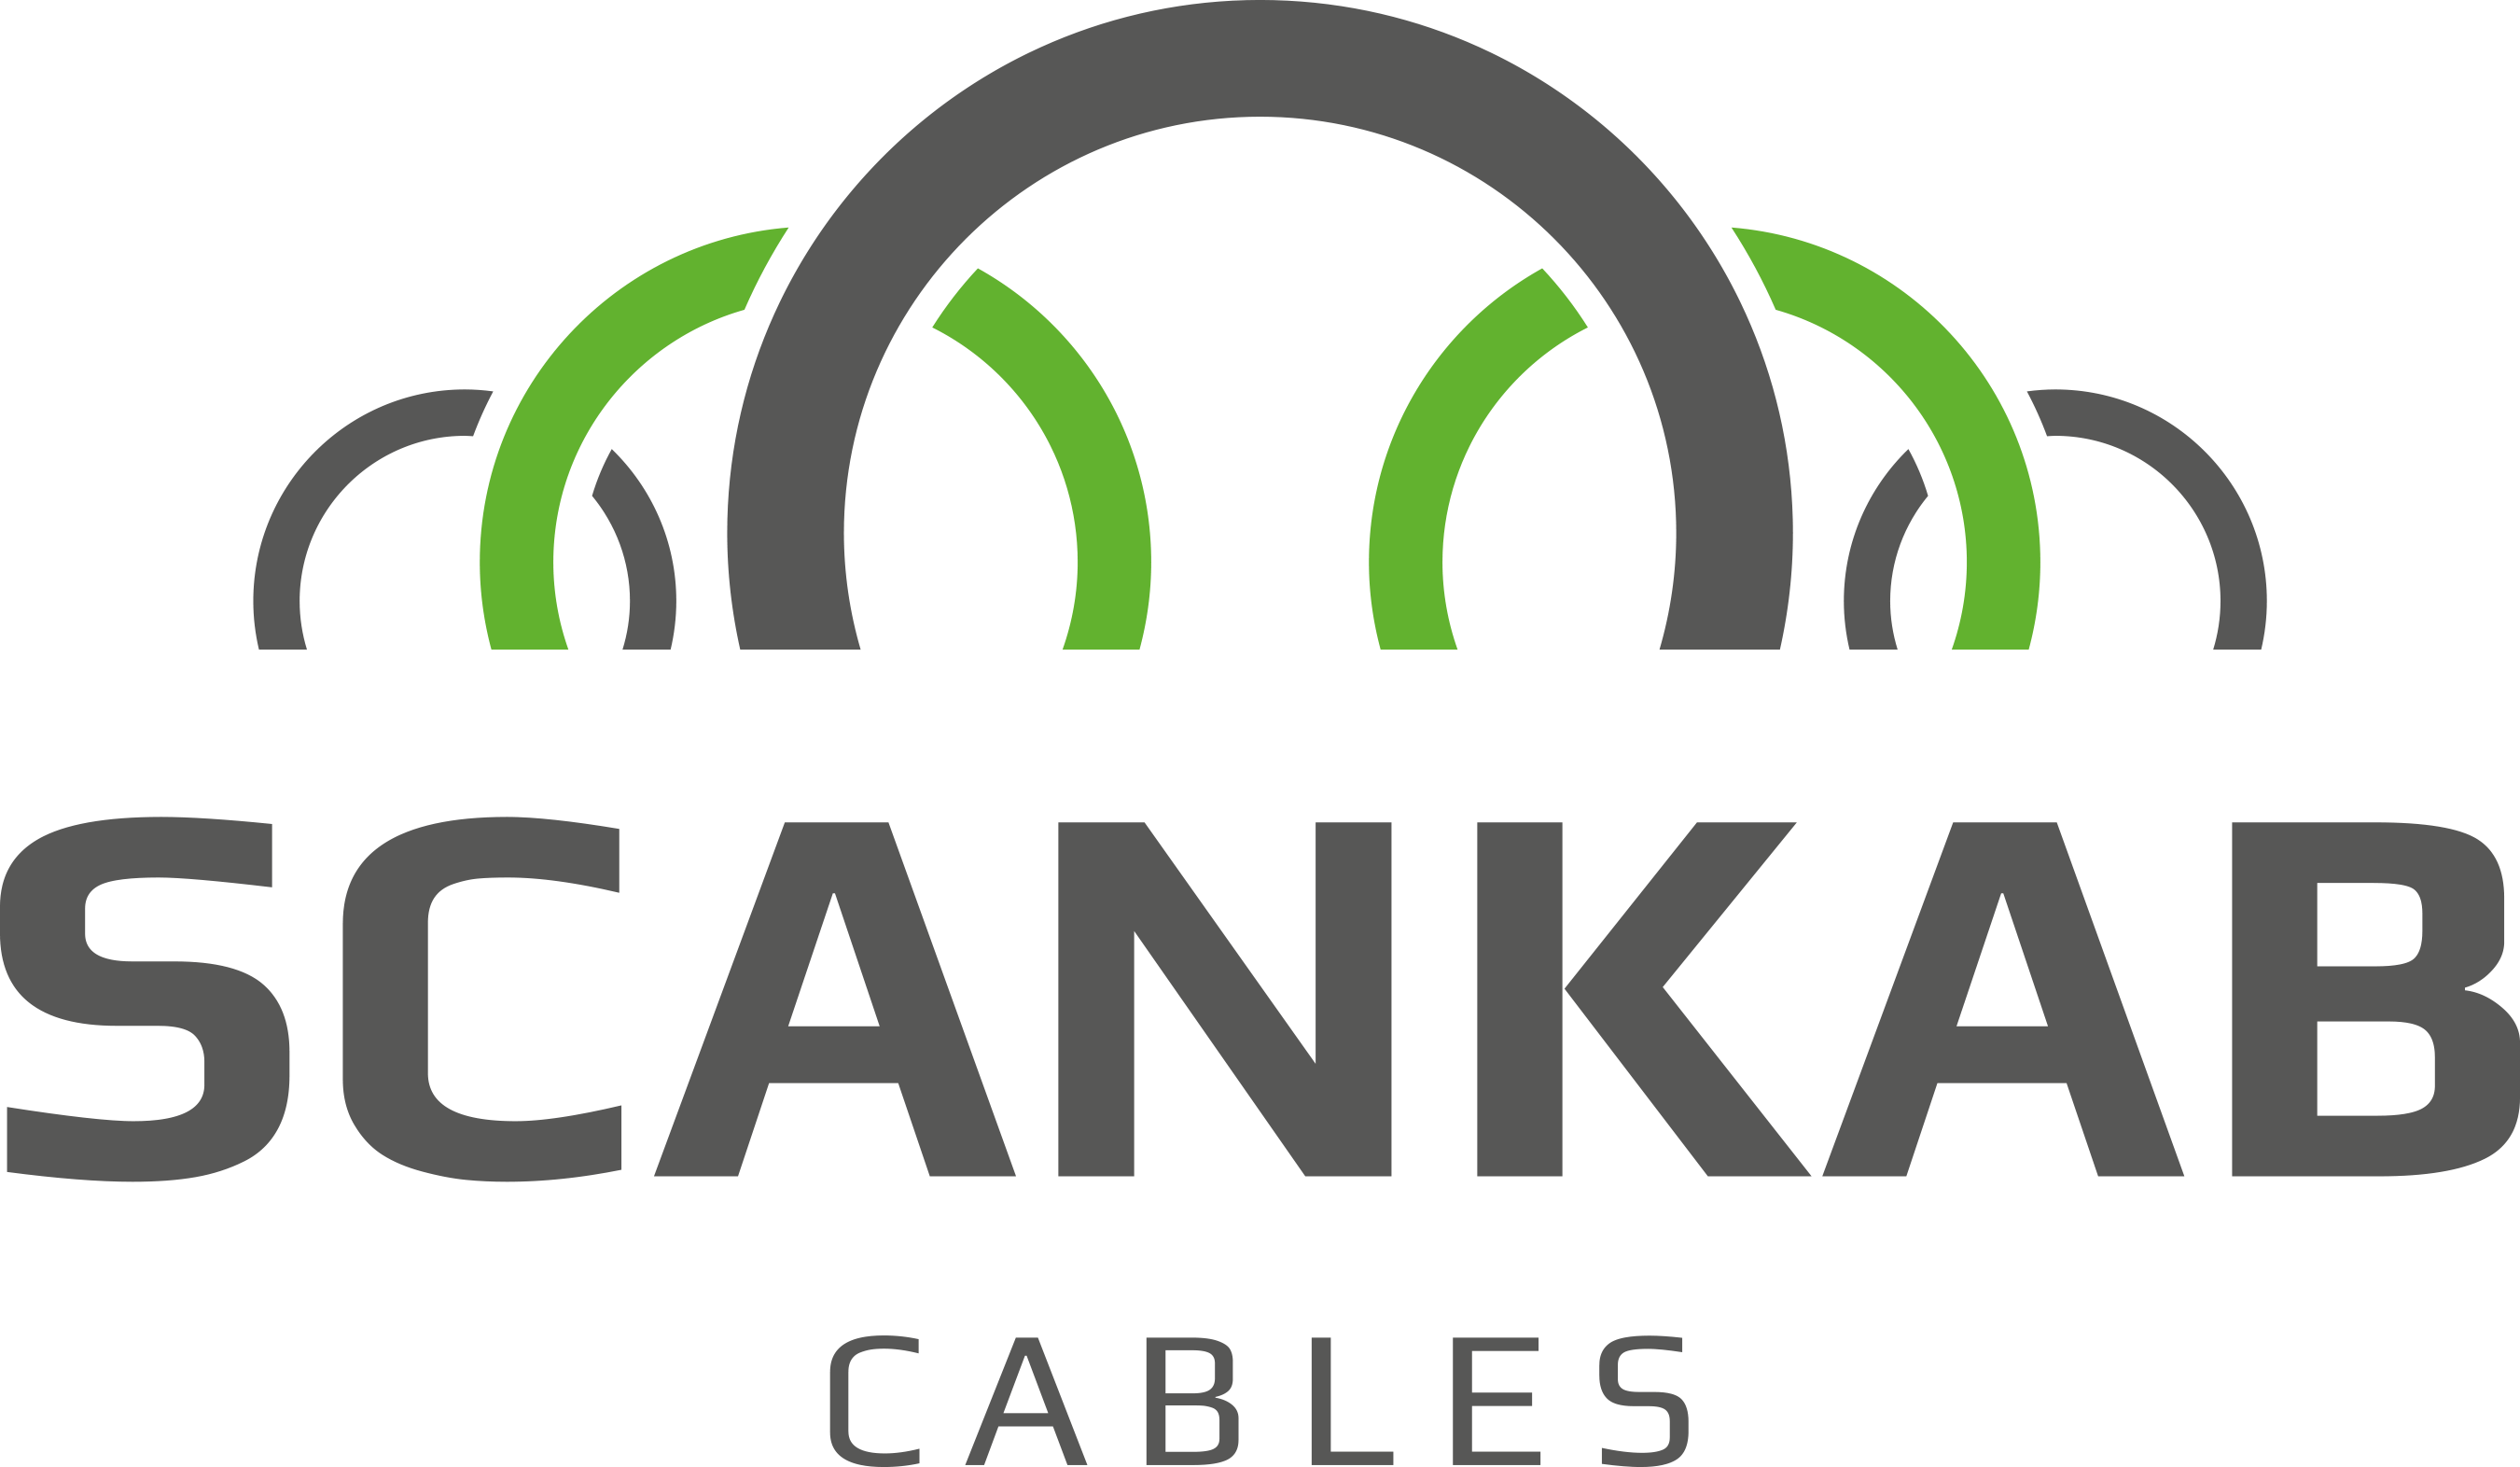 Scancab cables logga kraftkabel strömkabel nätverkskabel elektriker grossist